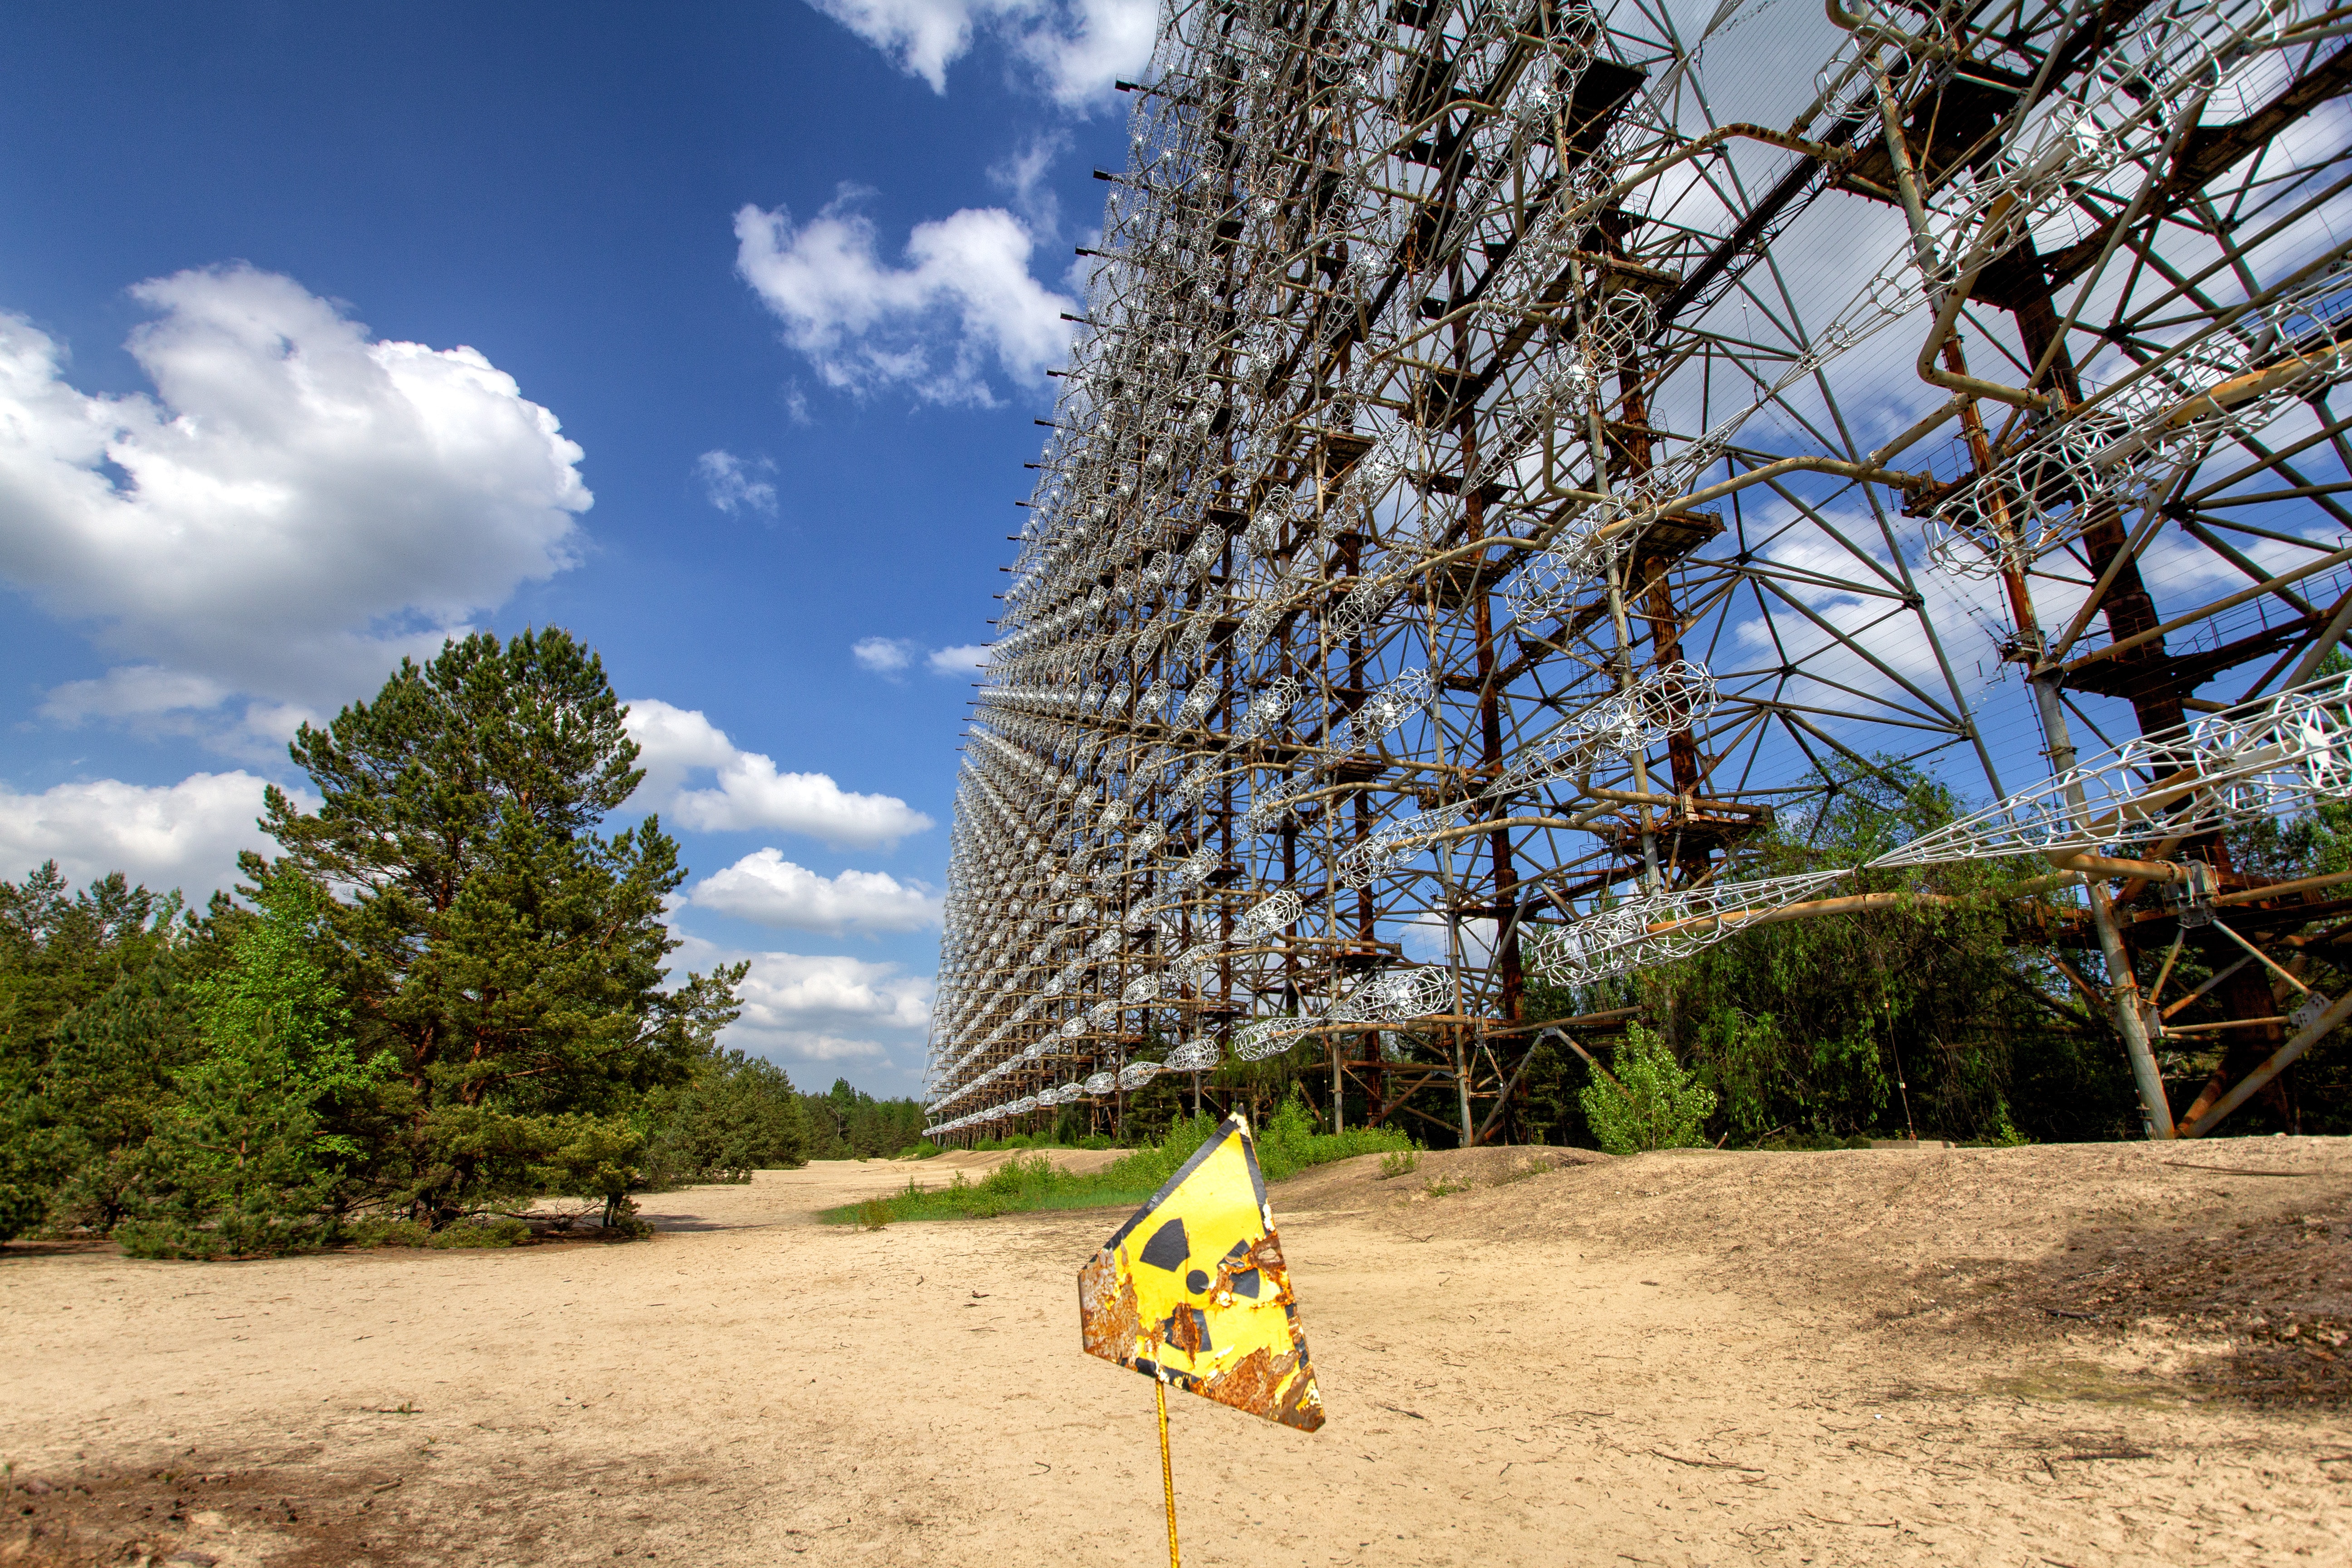 Http chernobyl. Зона отчуждения Чернобыльской АЭС. Туризм в зоне отчуждения Чернобыльской АЭС. Чернобыльская АЭС экскурсии. Припять зона отчуждения 2021.